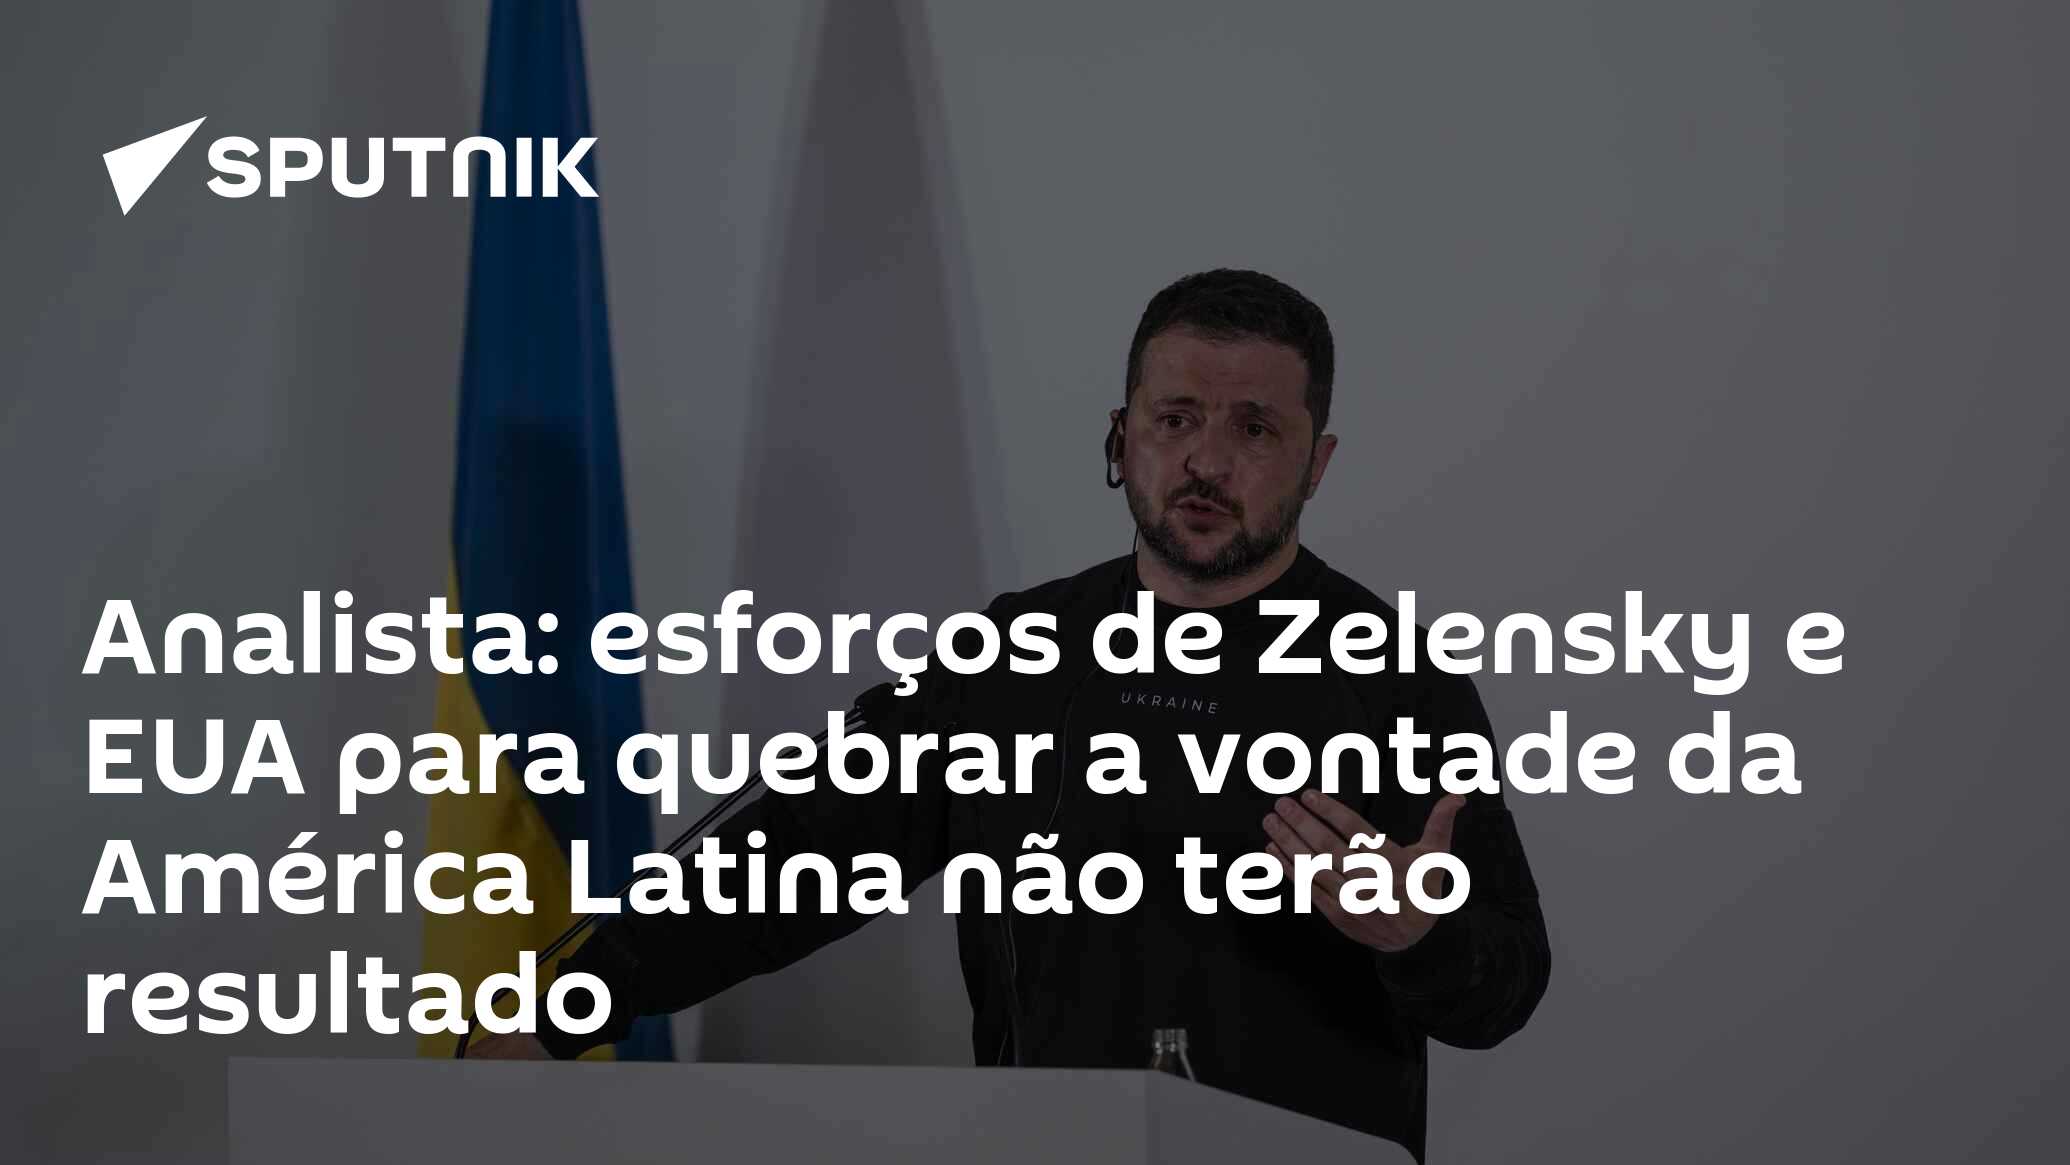 Zelensky perde apoio popular e pode ser substituído em prol de processo de  paz, diz analista - 14.12.2023, Sputnik Brasil